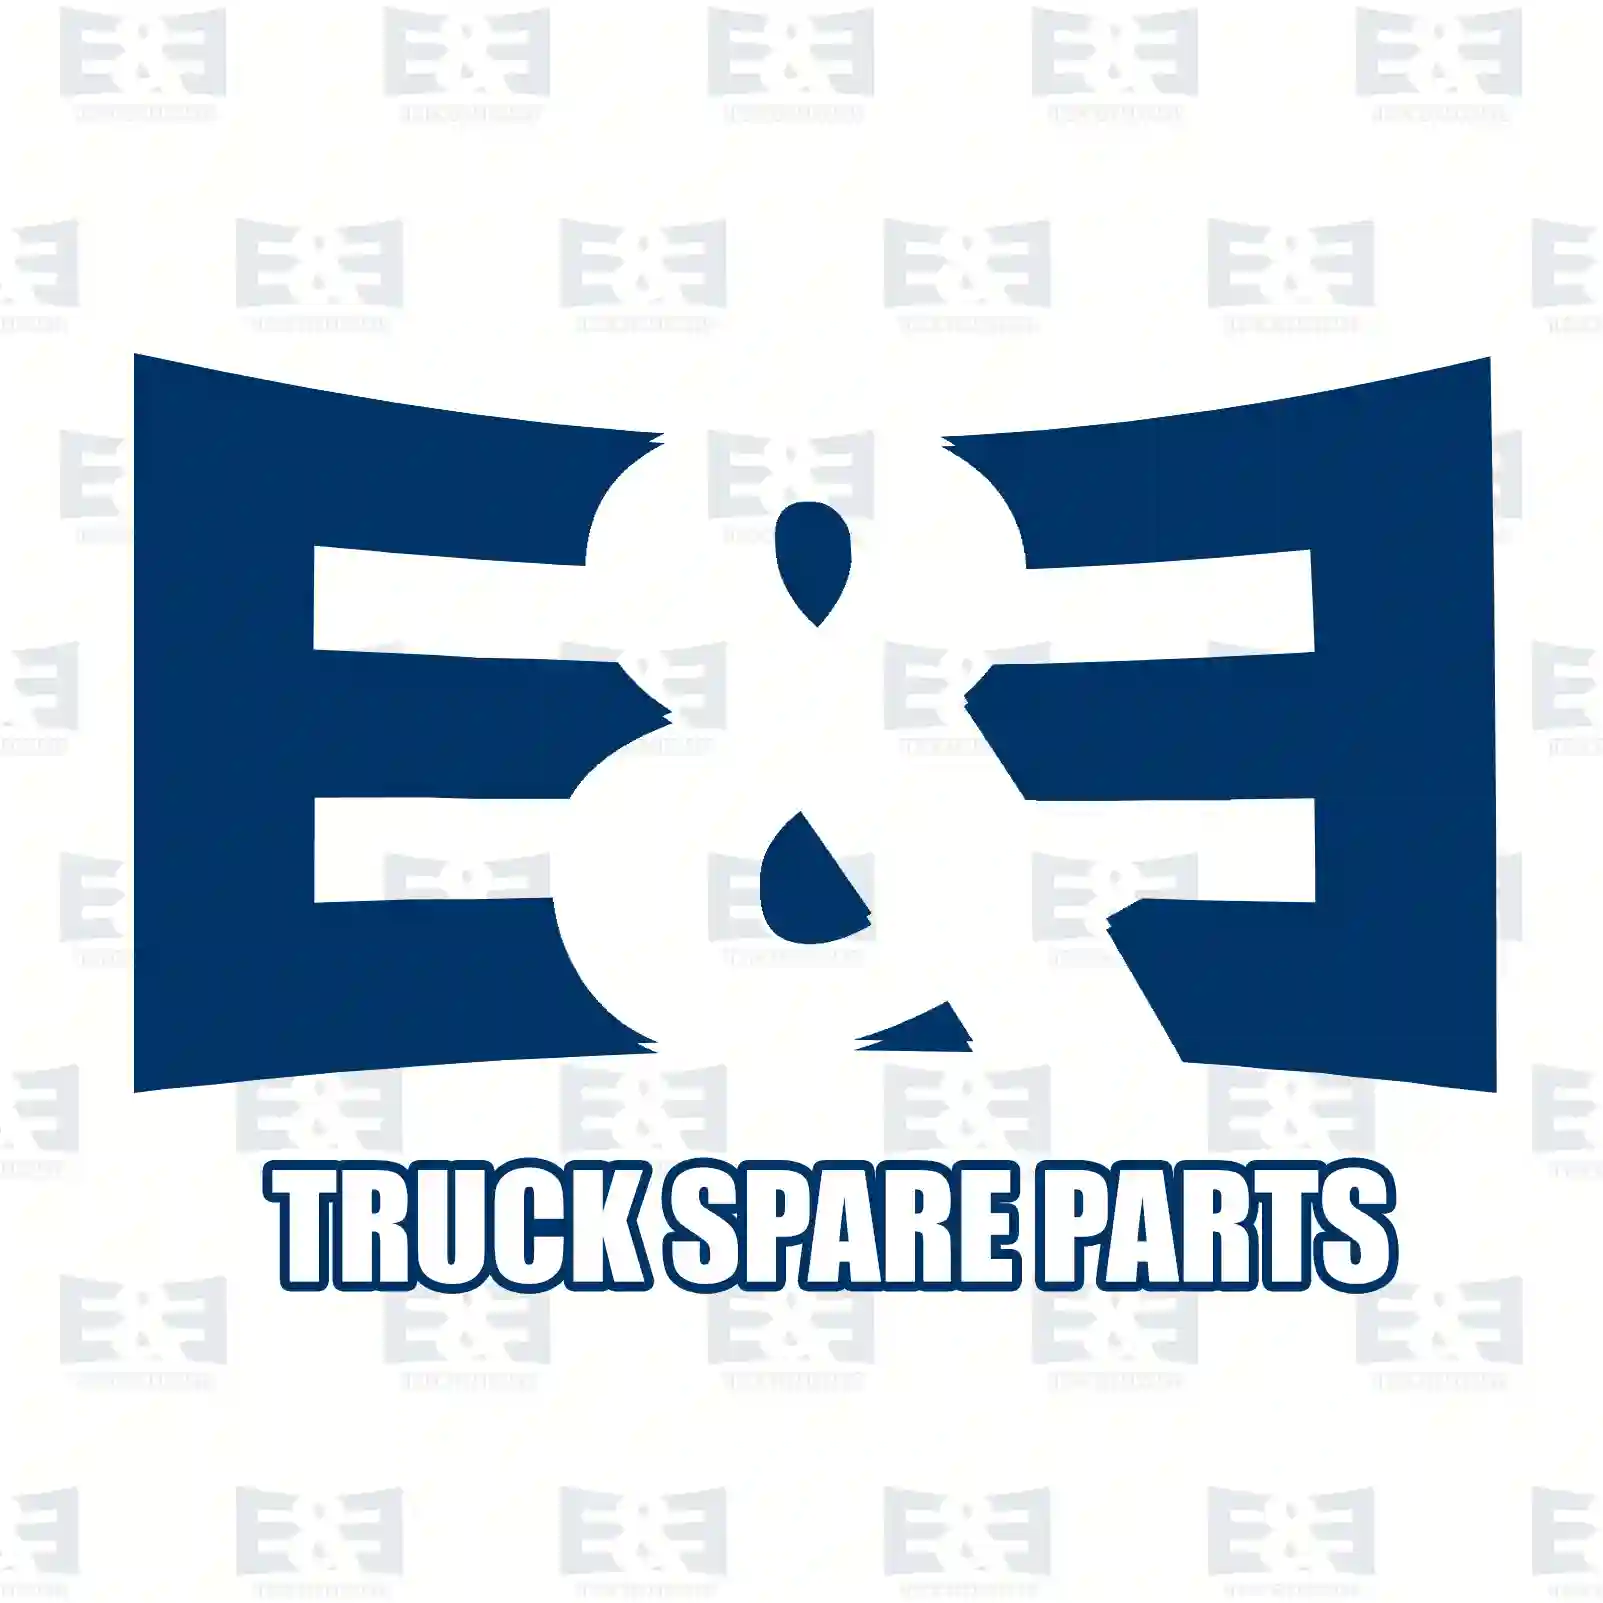 Gear shift rod, 2E2283326, 1526282, 266518, ZG30696-0008 ||  2E2283326 E&E Truck Spare Parts | Truck Spare Parts, Auotomotive Spare Parts Gear shift rod, 2E2283326, 1526282, 266518, ZG30696-0008 ||  2E2283326 E&E Truck Spare Parts | Truck Spare Parts, Auotomotive Spare Parts